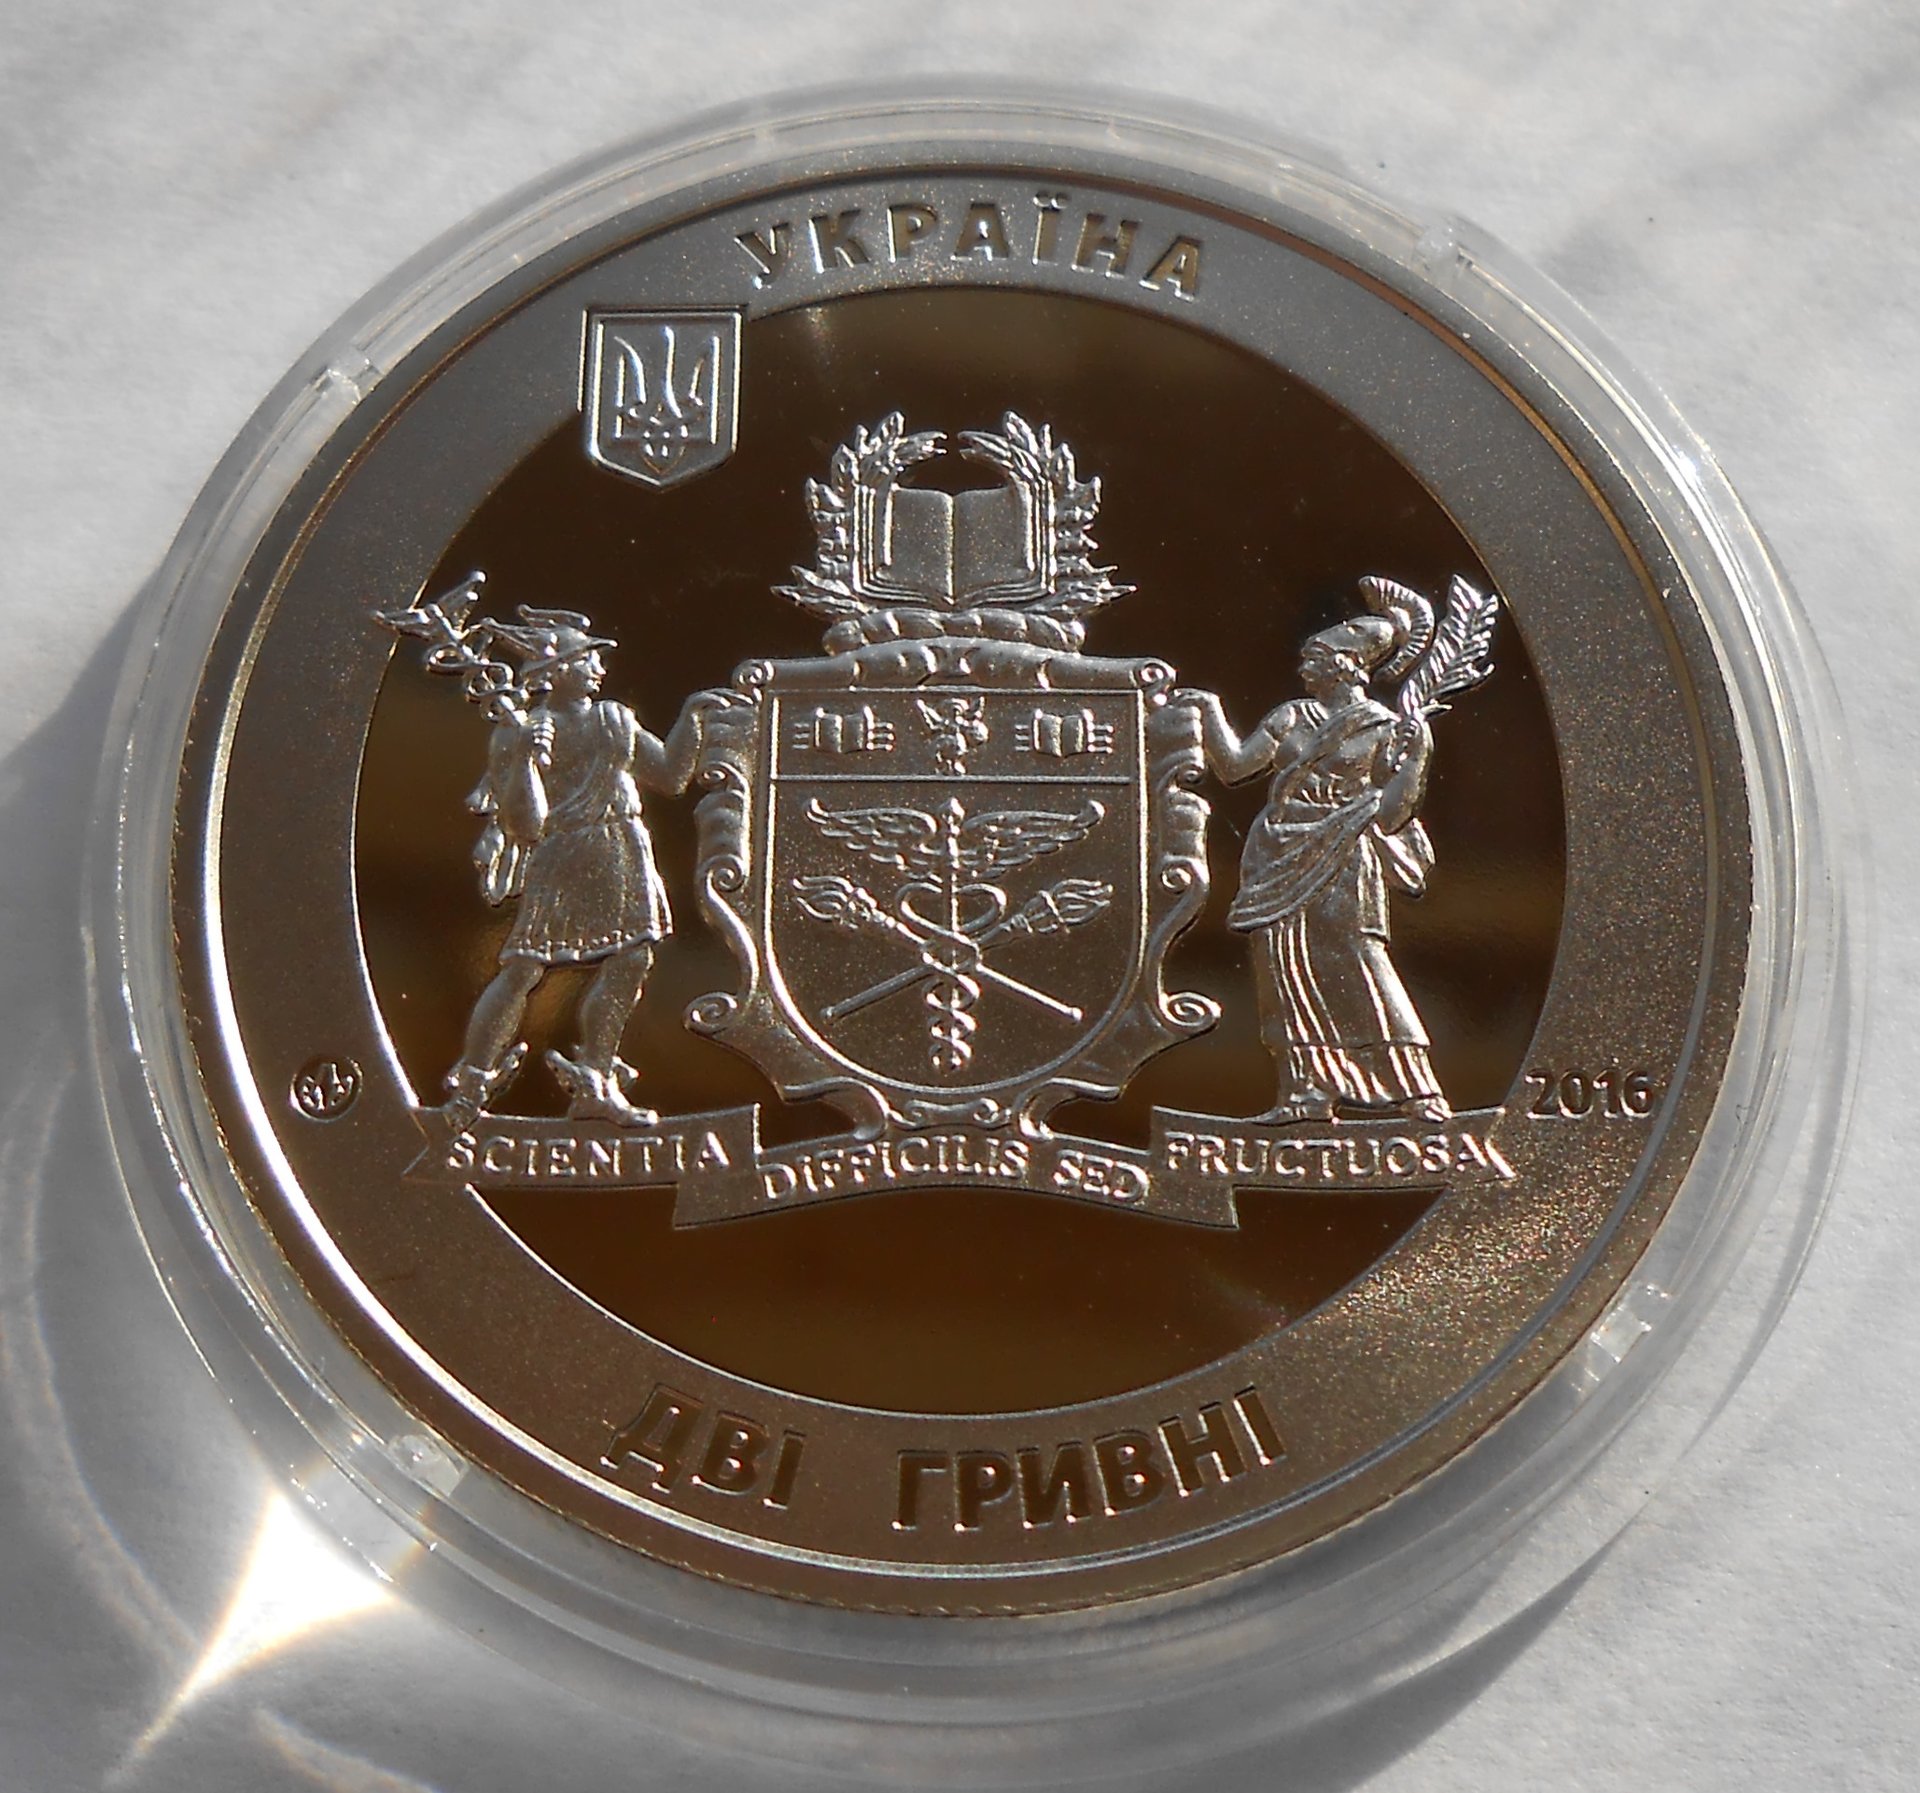 ebay7 ukraine coins 016.JPG